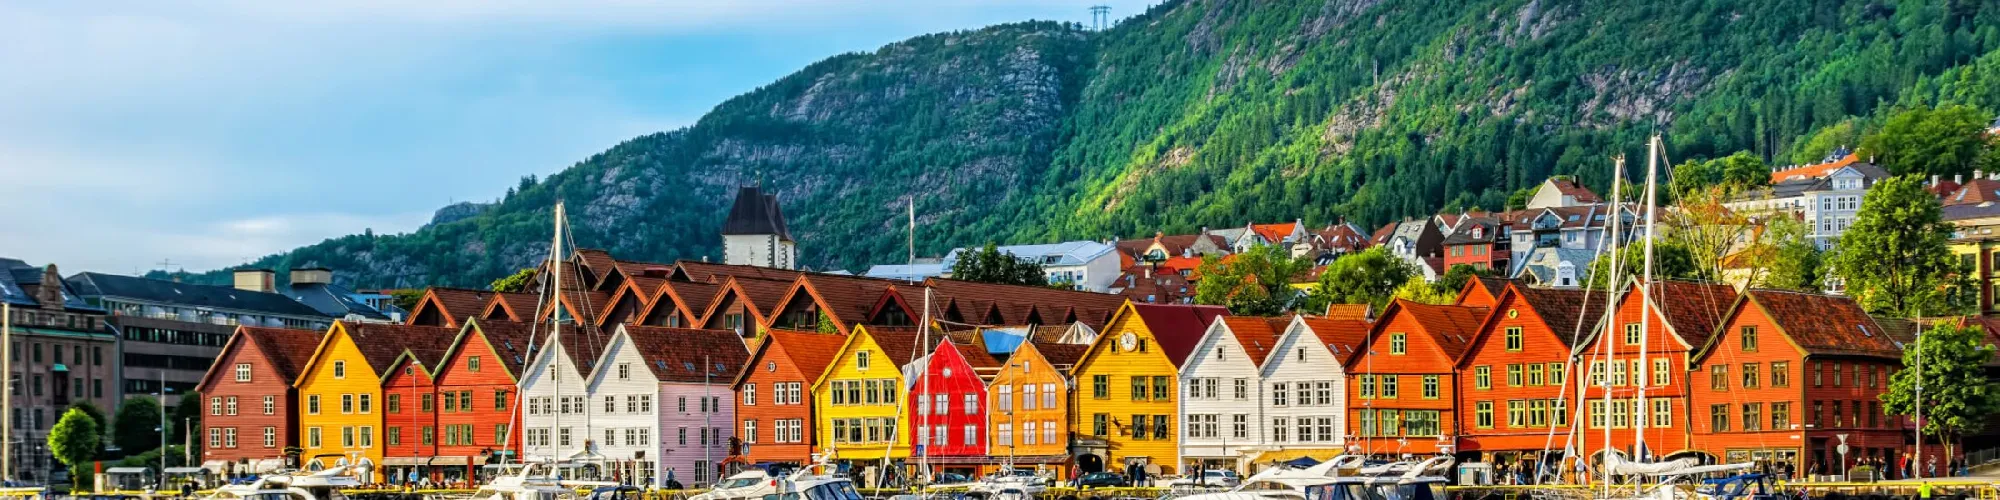 Hotels in Norwegen background image